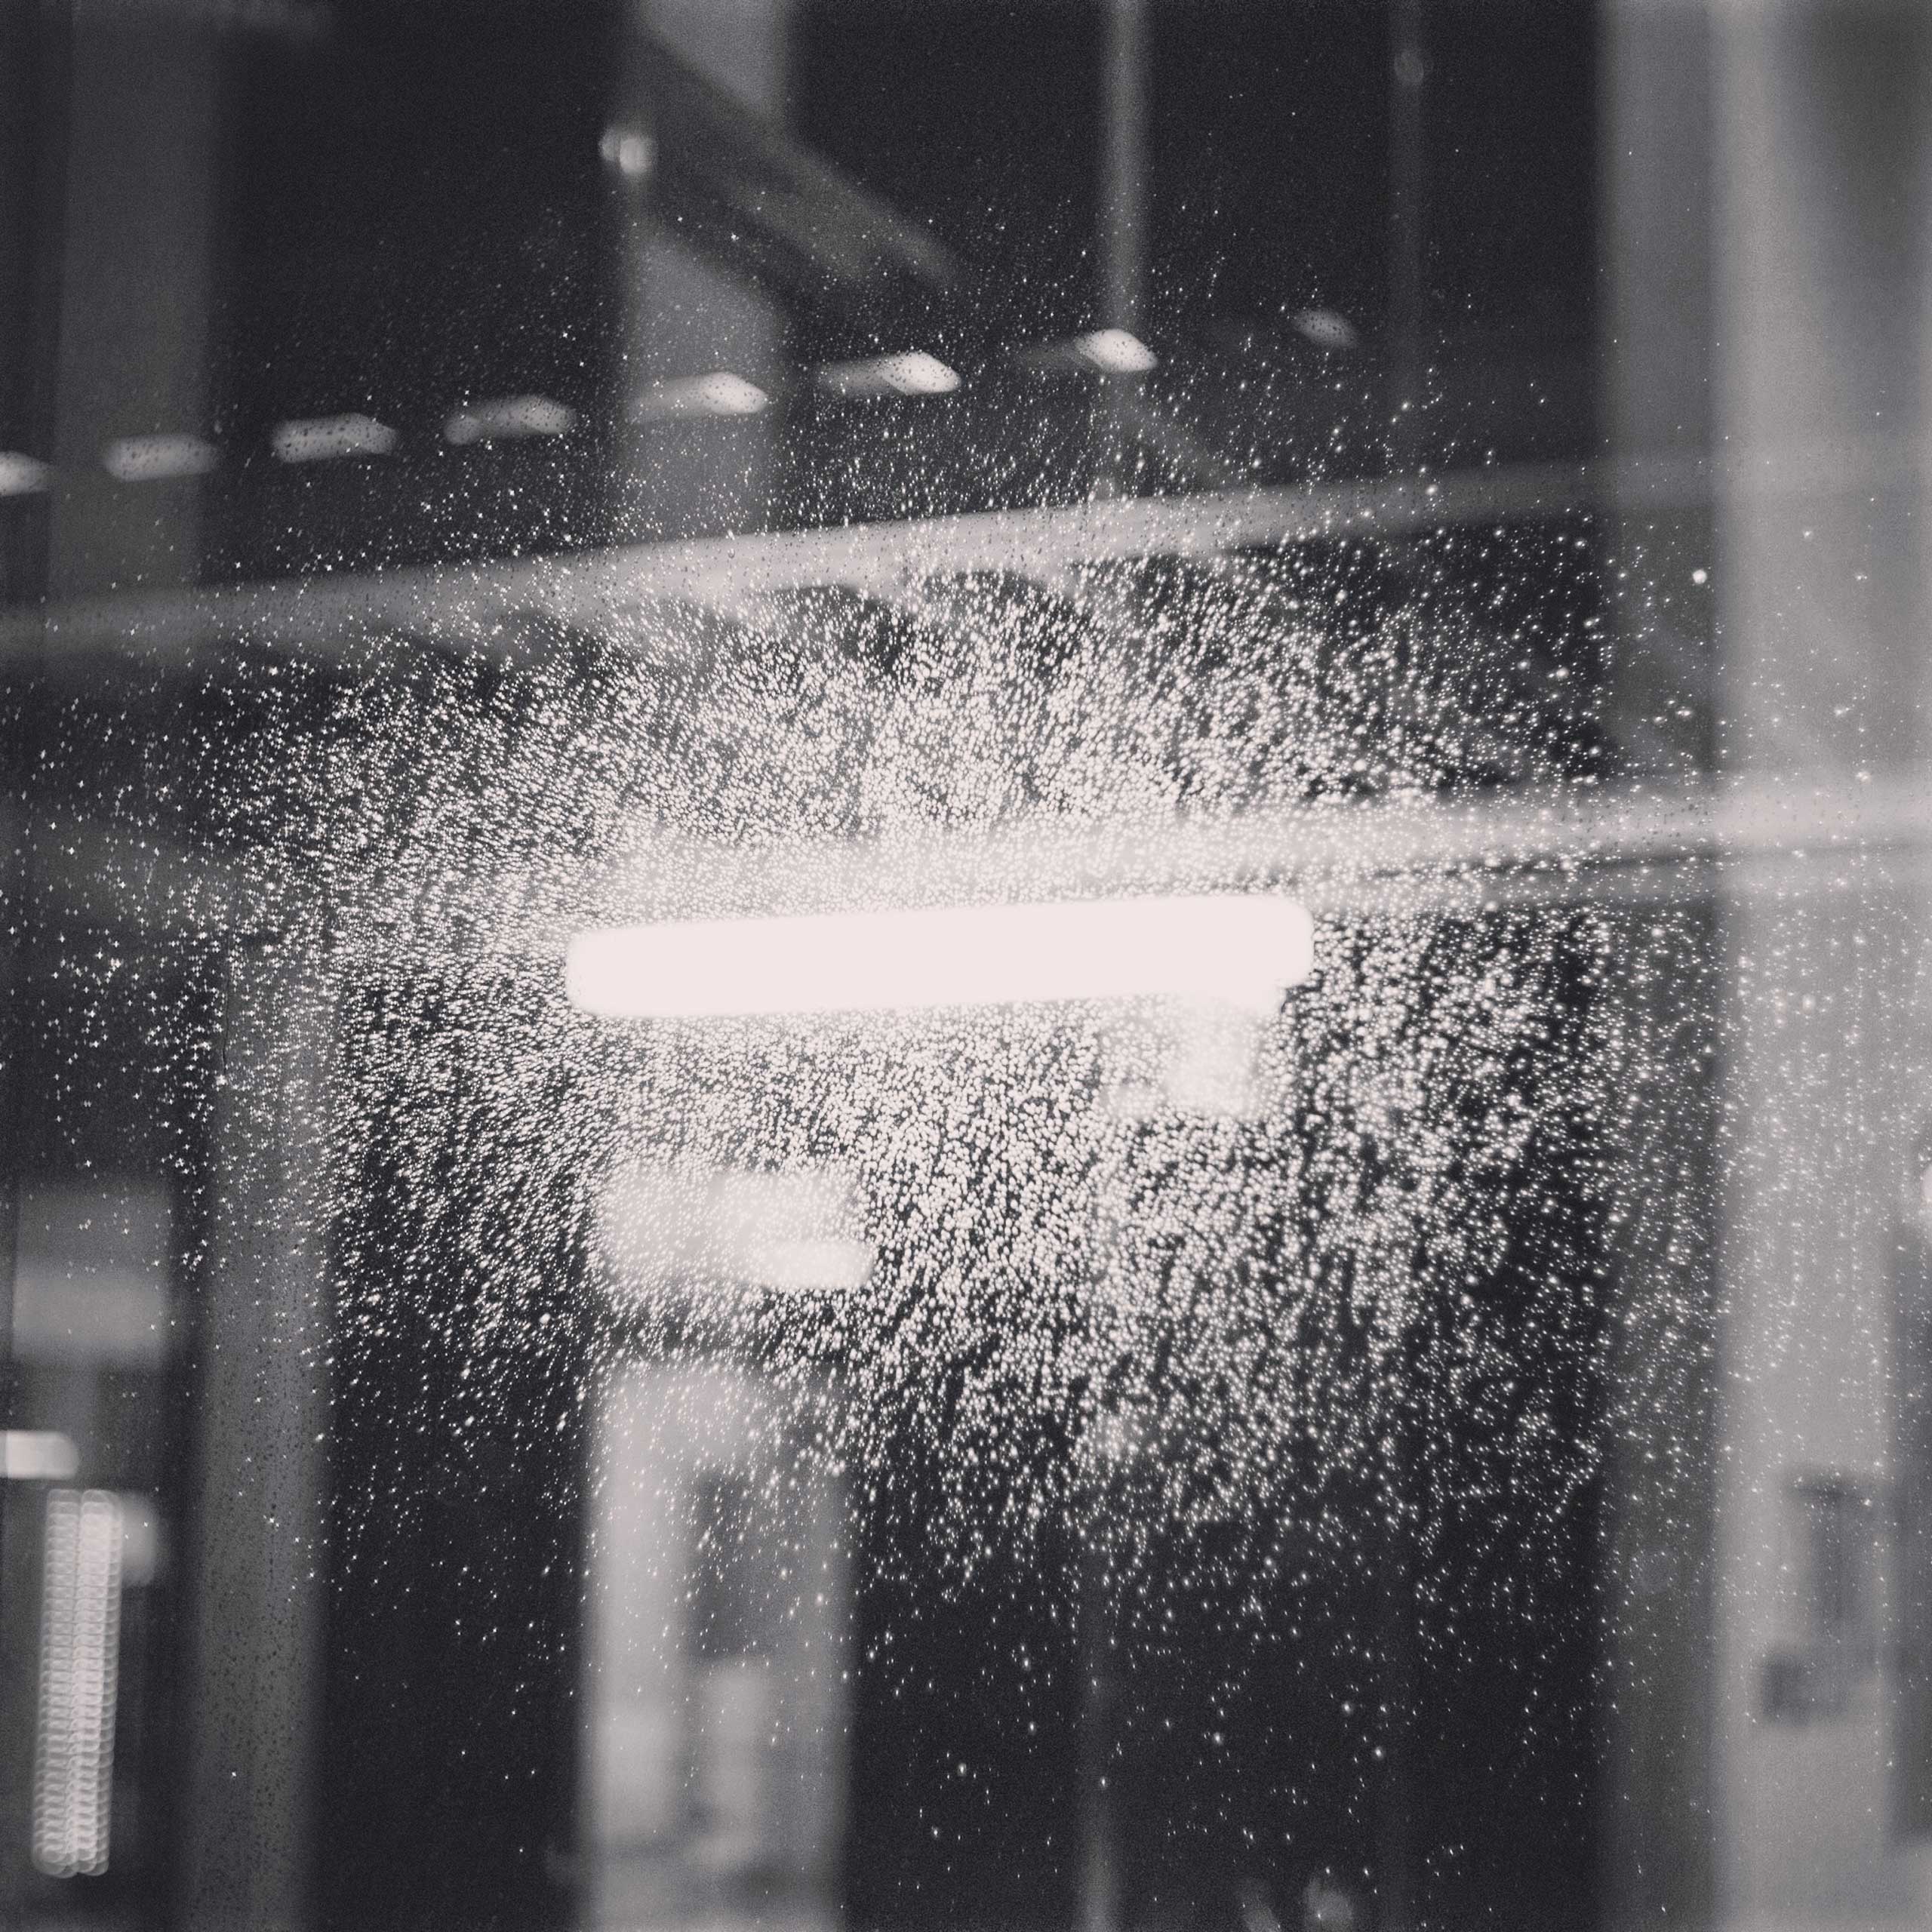 Rain outside the hospital